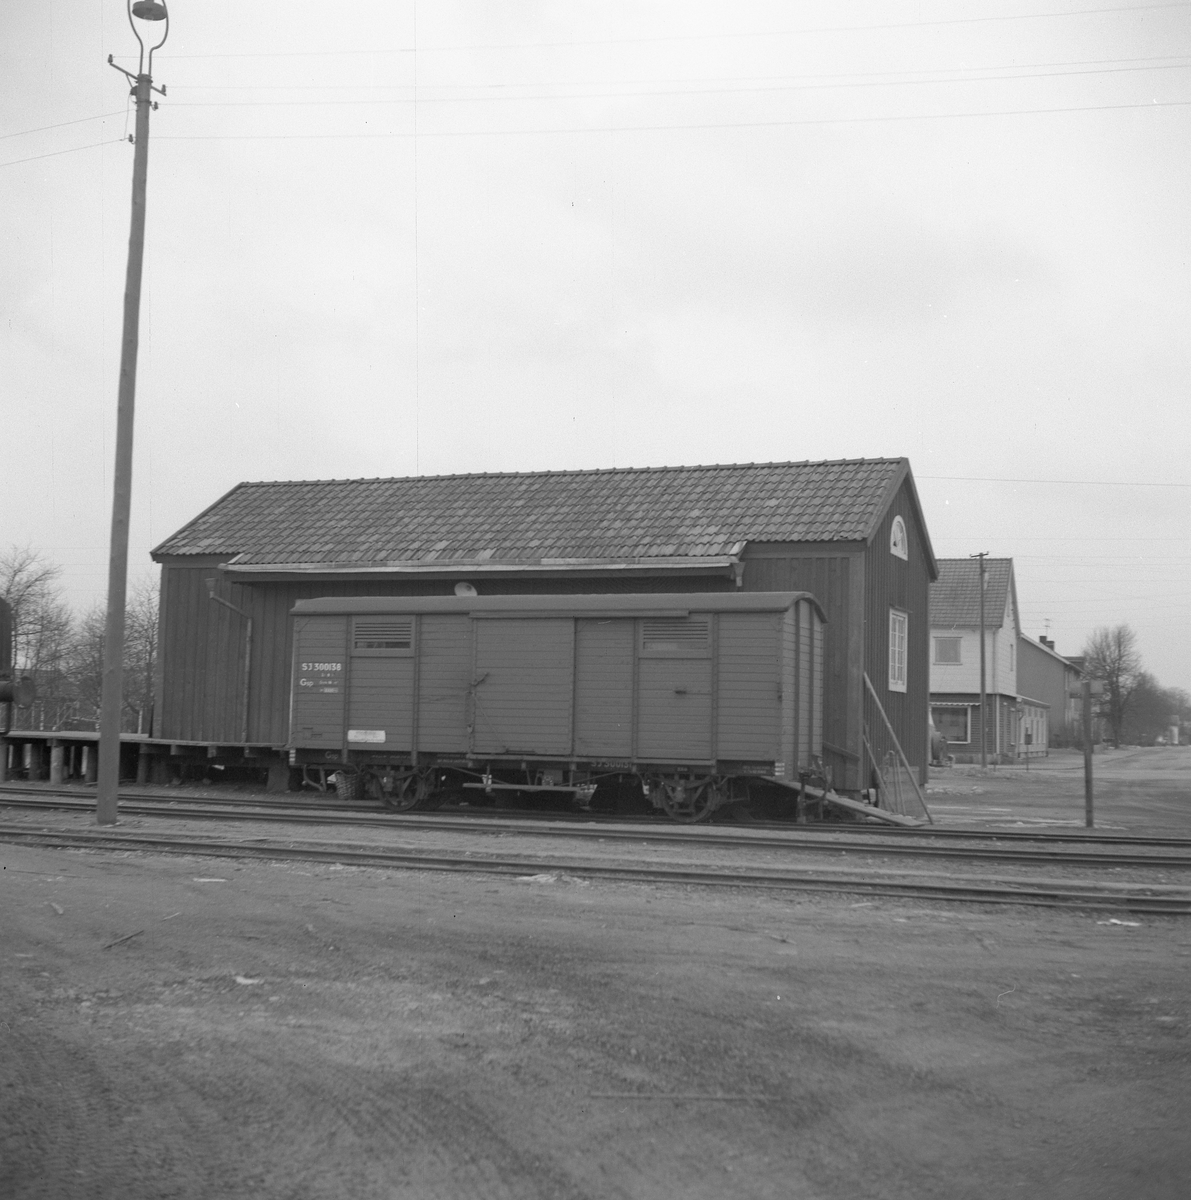 Statens Järnvägar, SJ Gsp 300138.
Station anlagd 1922. Envånings stationshus i trä, byggt i vinkel. Tjänstelokal och lägenhet renoverades 1944, samtidigt tillbyggdes magasinet